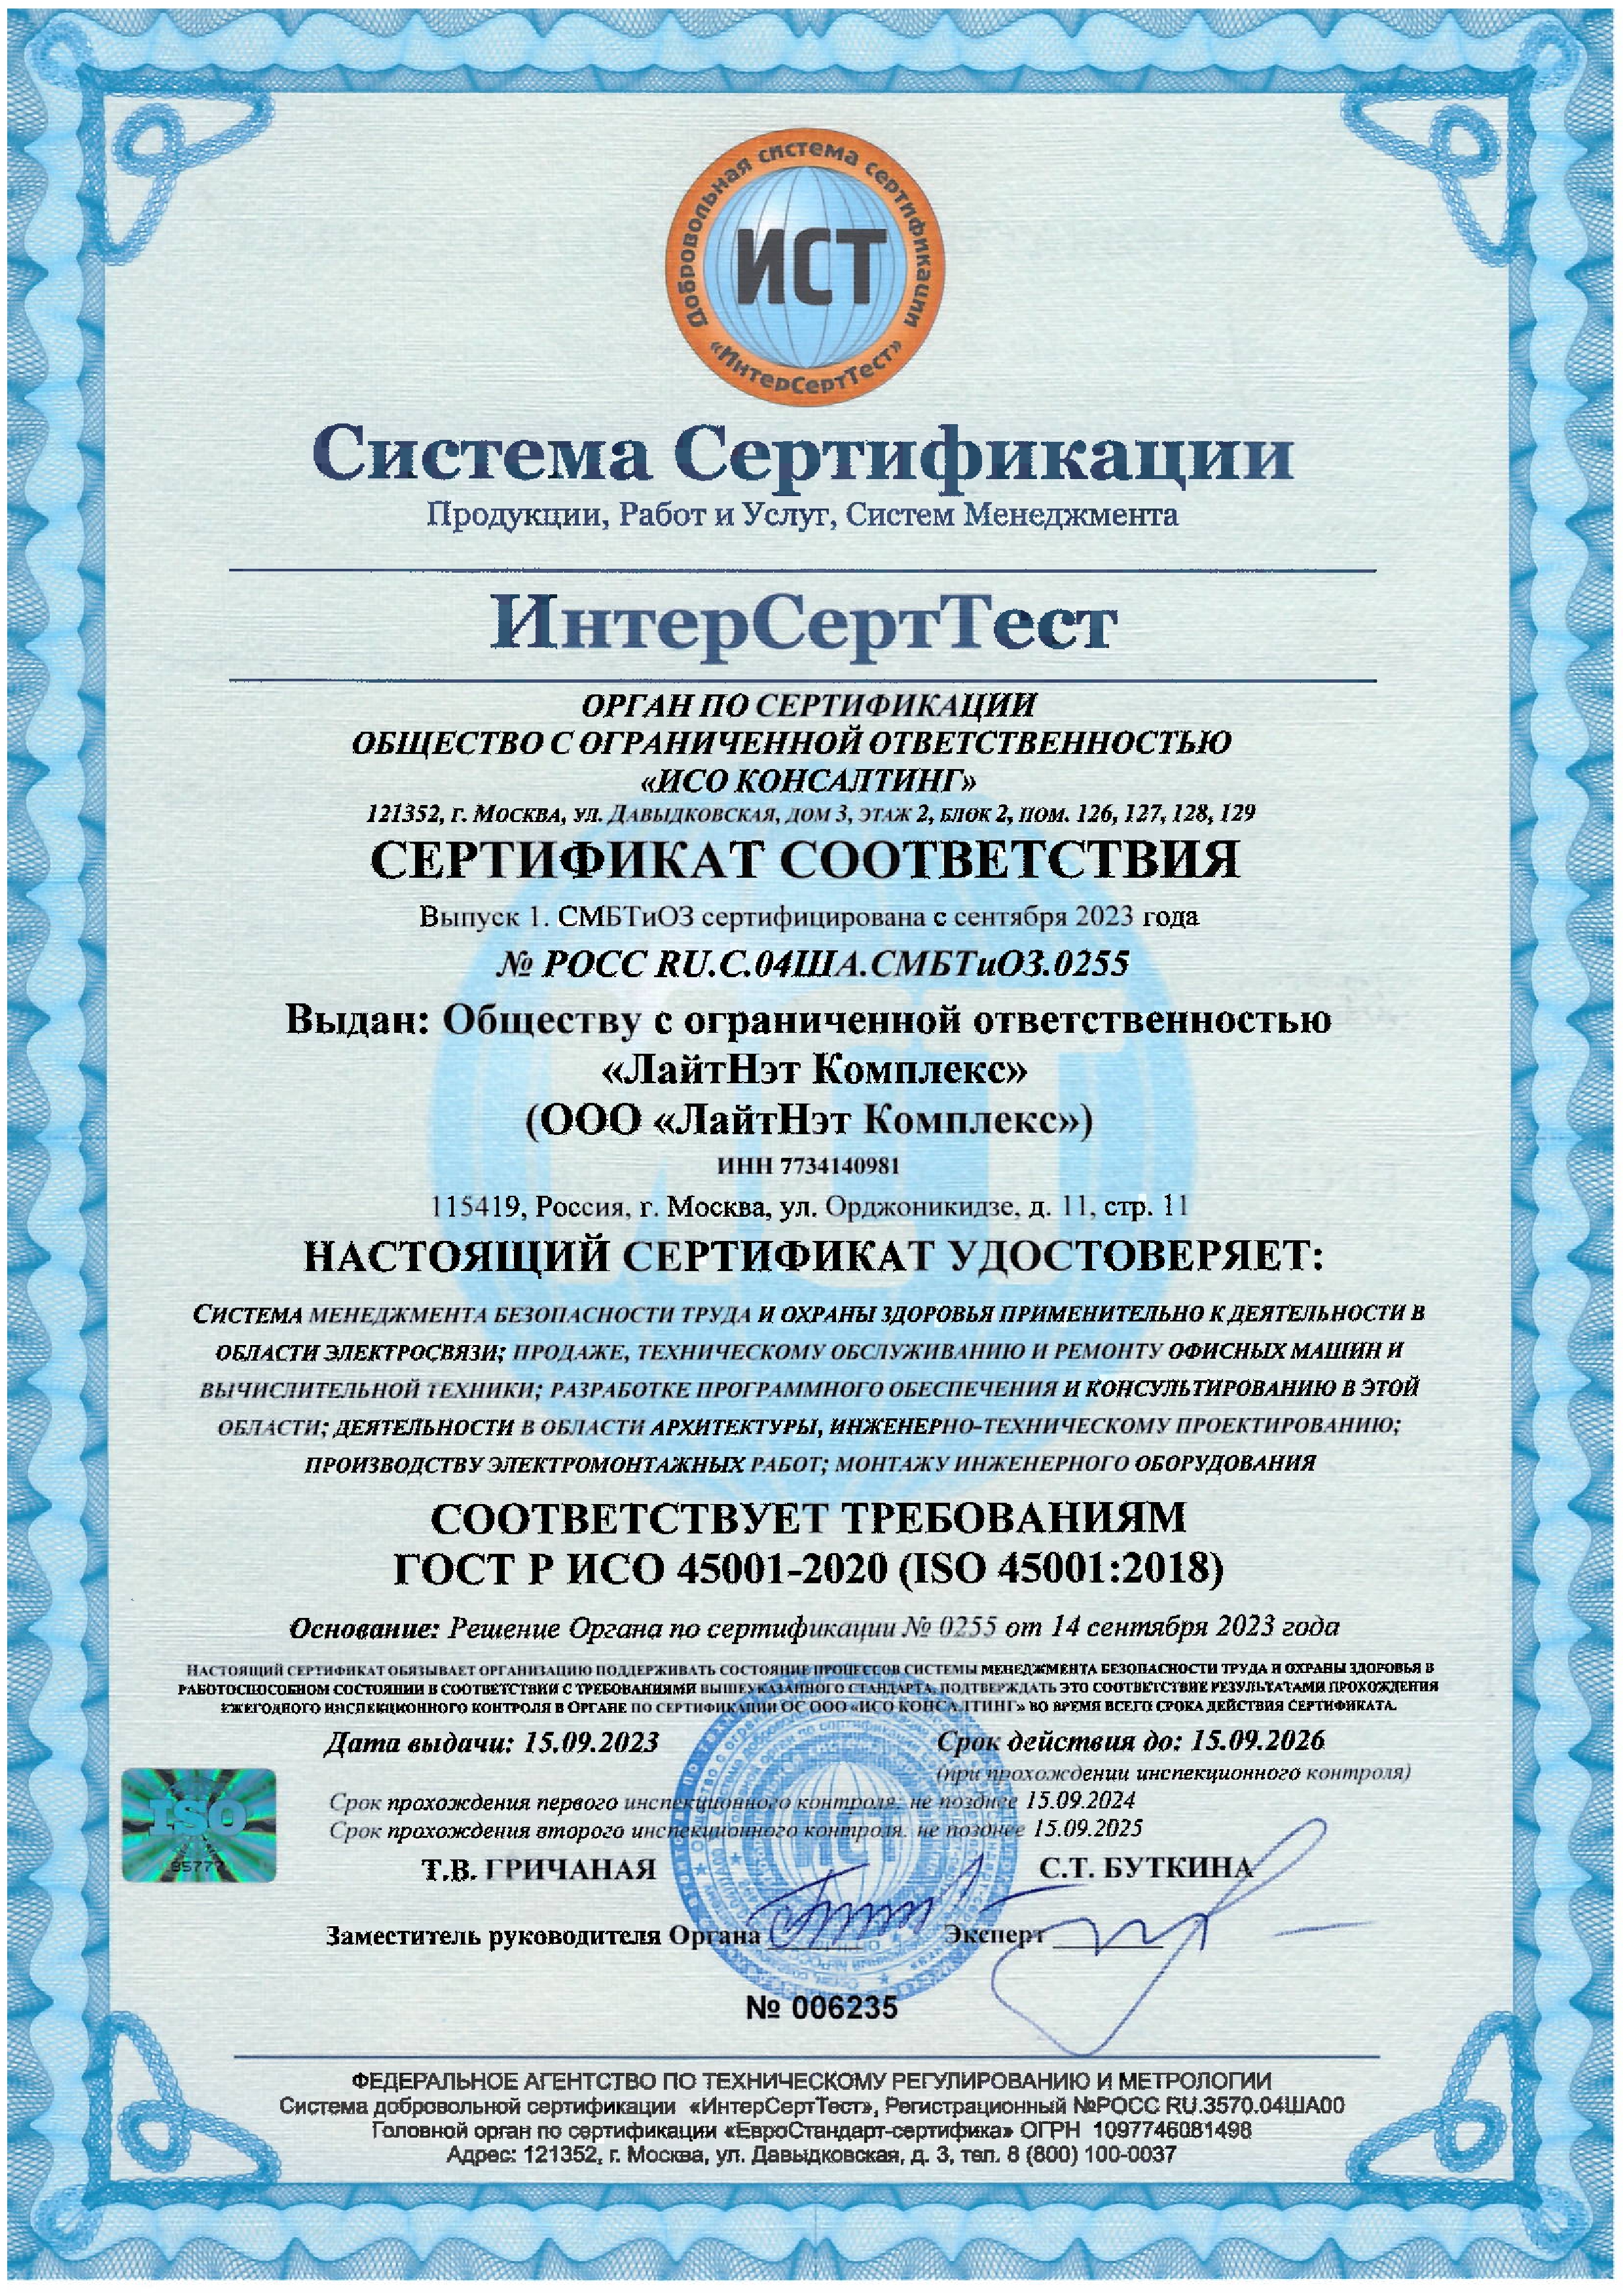 Сертификат соответствия системы менеджмента безопасности труда и охраны здоровья стандарту ГОСТ Р ИСО 45001-2020